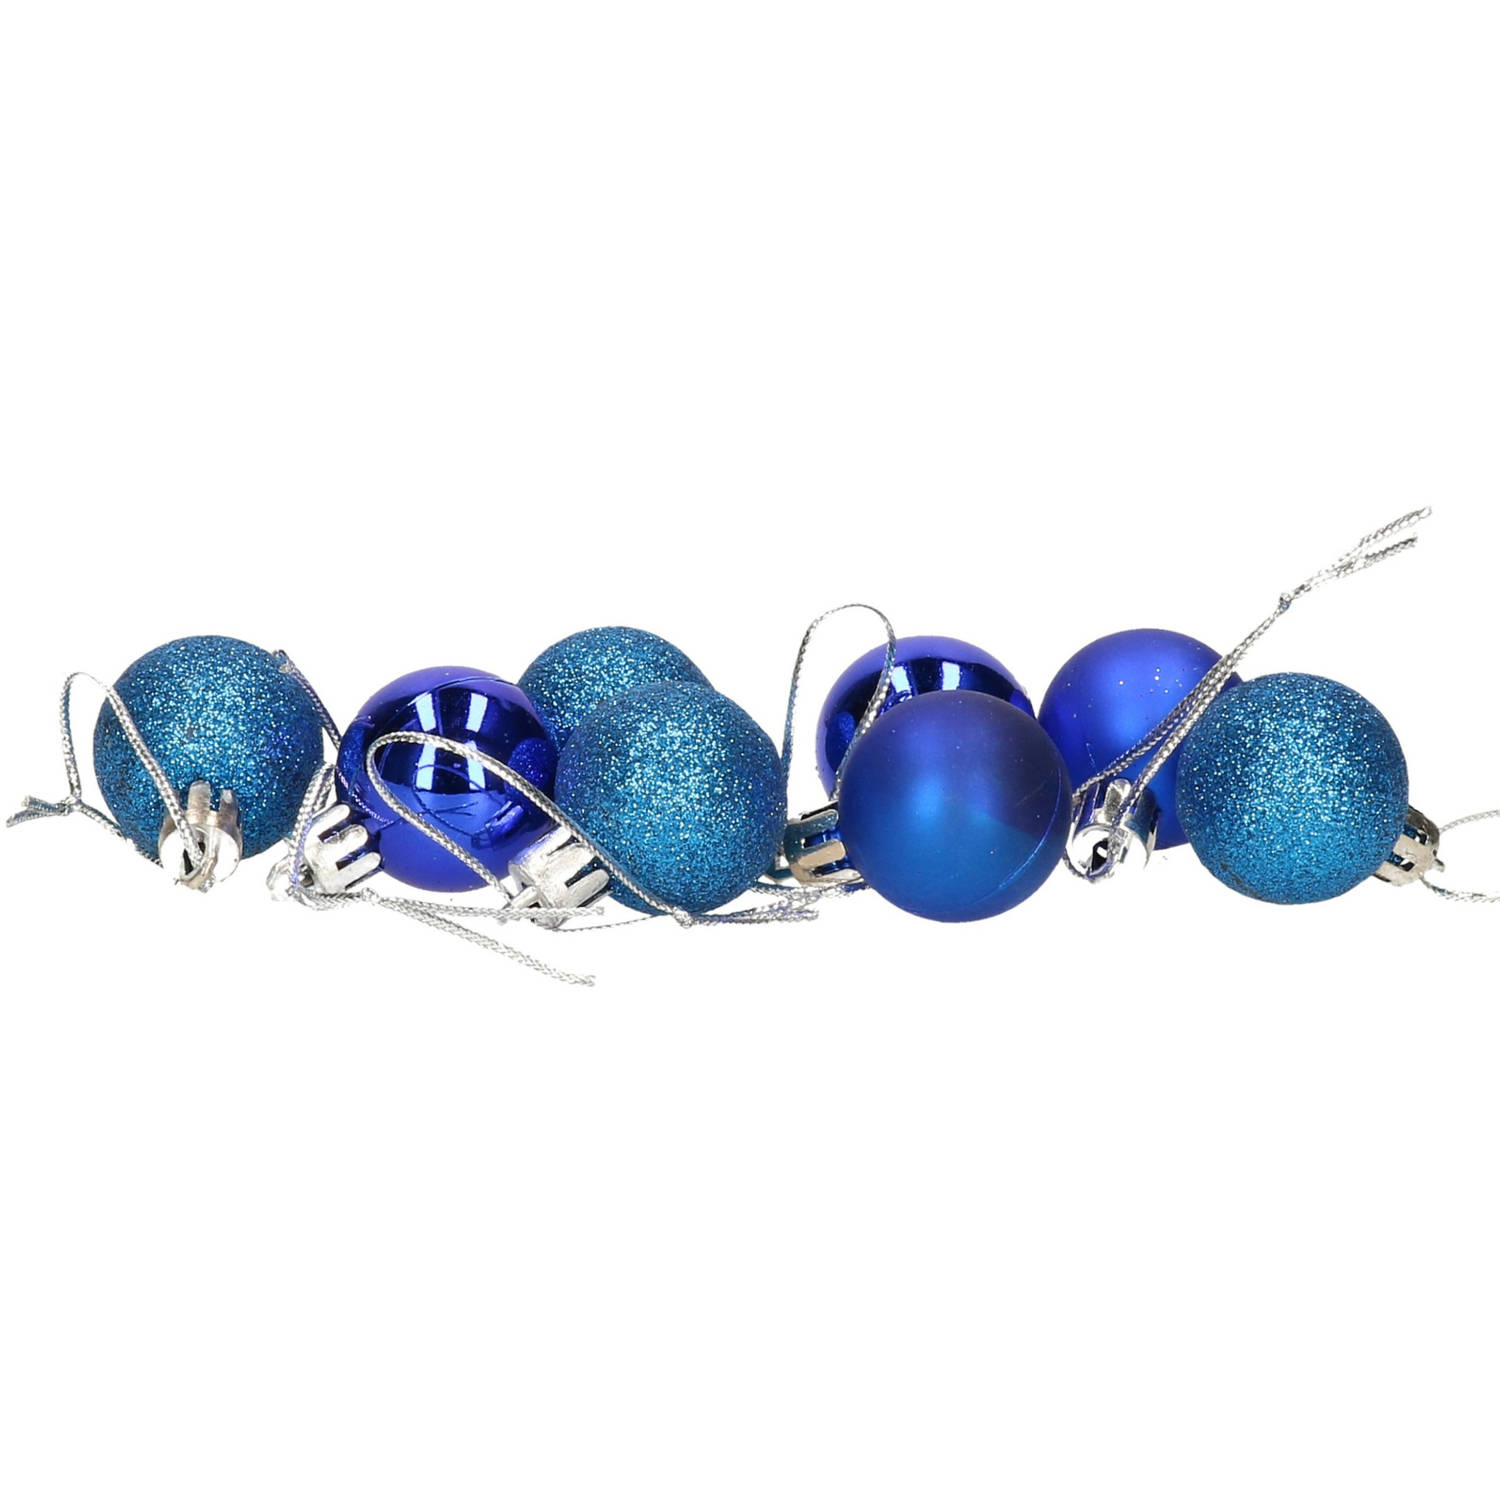 8x Stuks Kerstballen Blauw Mix Van Mat-glans-glitter Kunststof 3 Cm Kerstbal